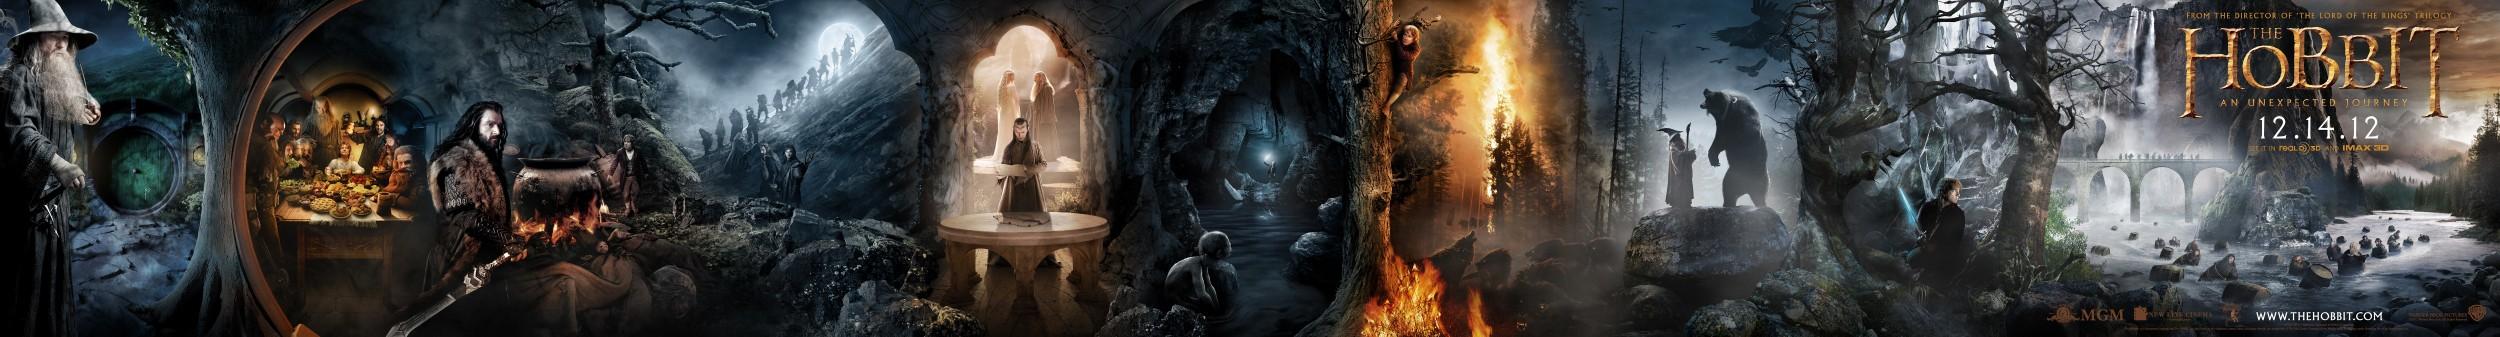 Un maxi poster pour Le Hobbit : un voyage inattendu